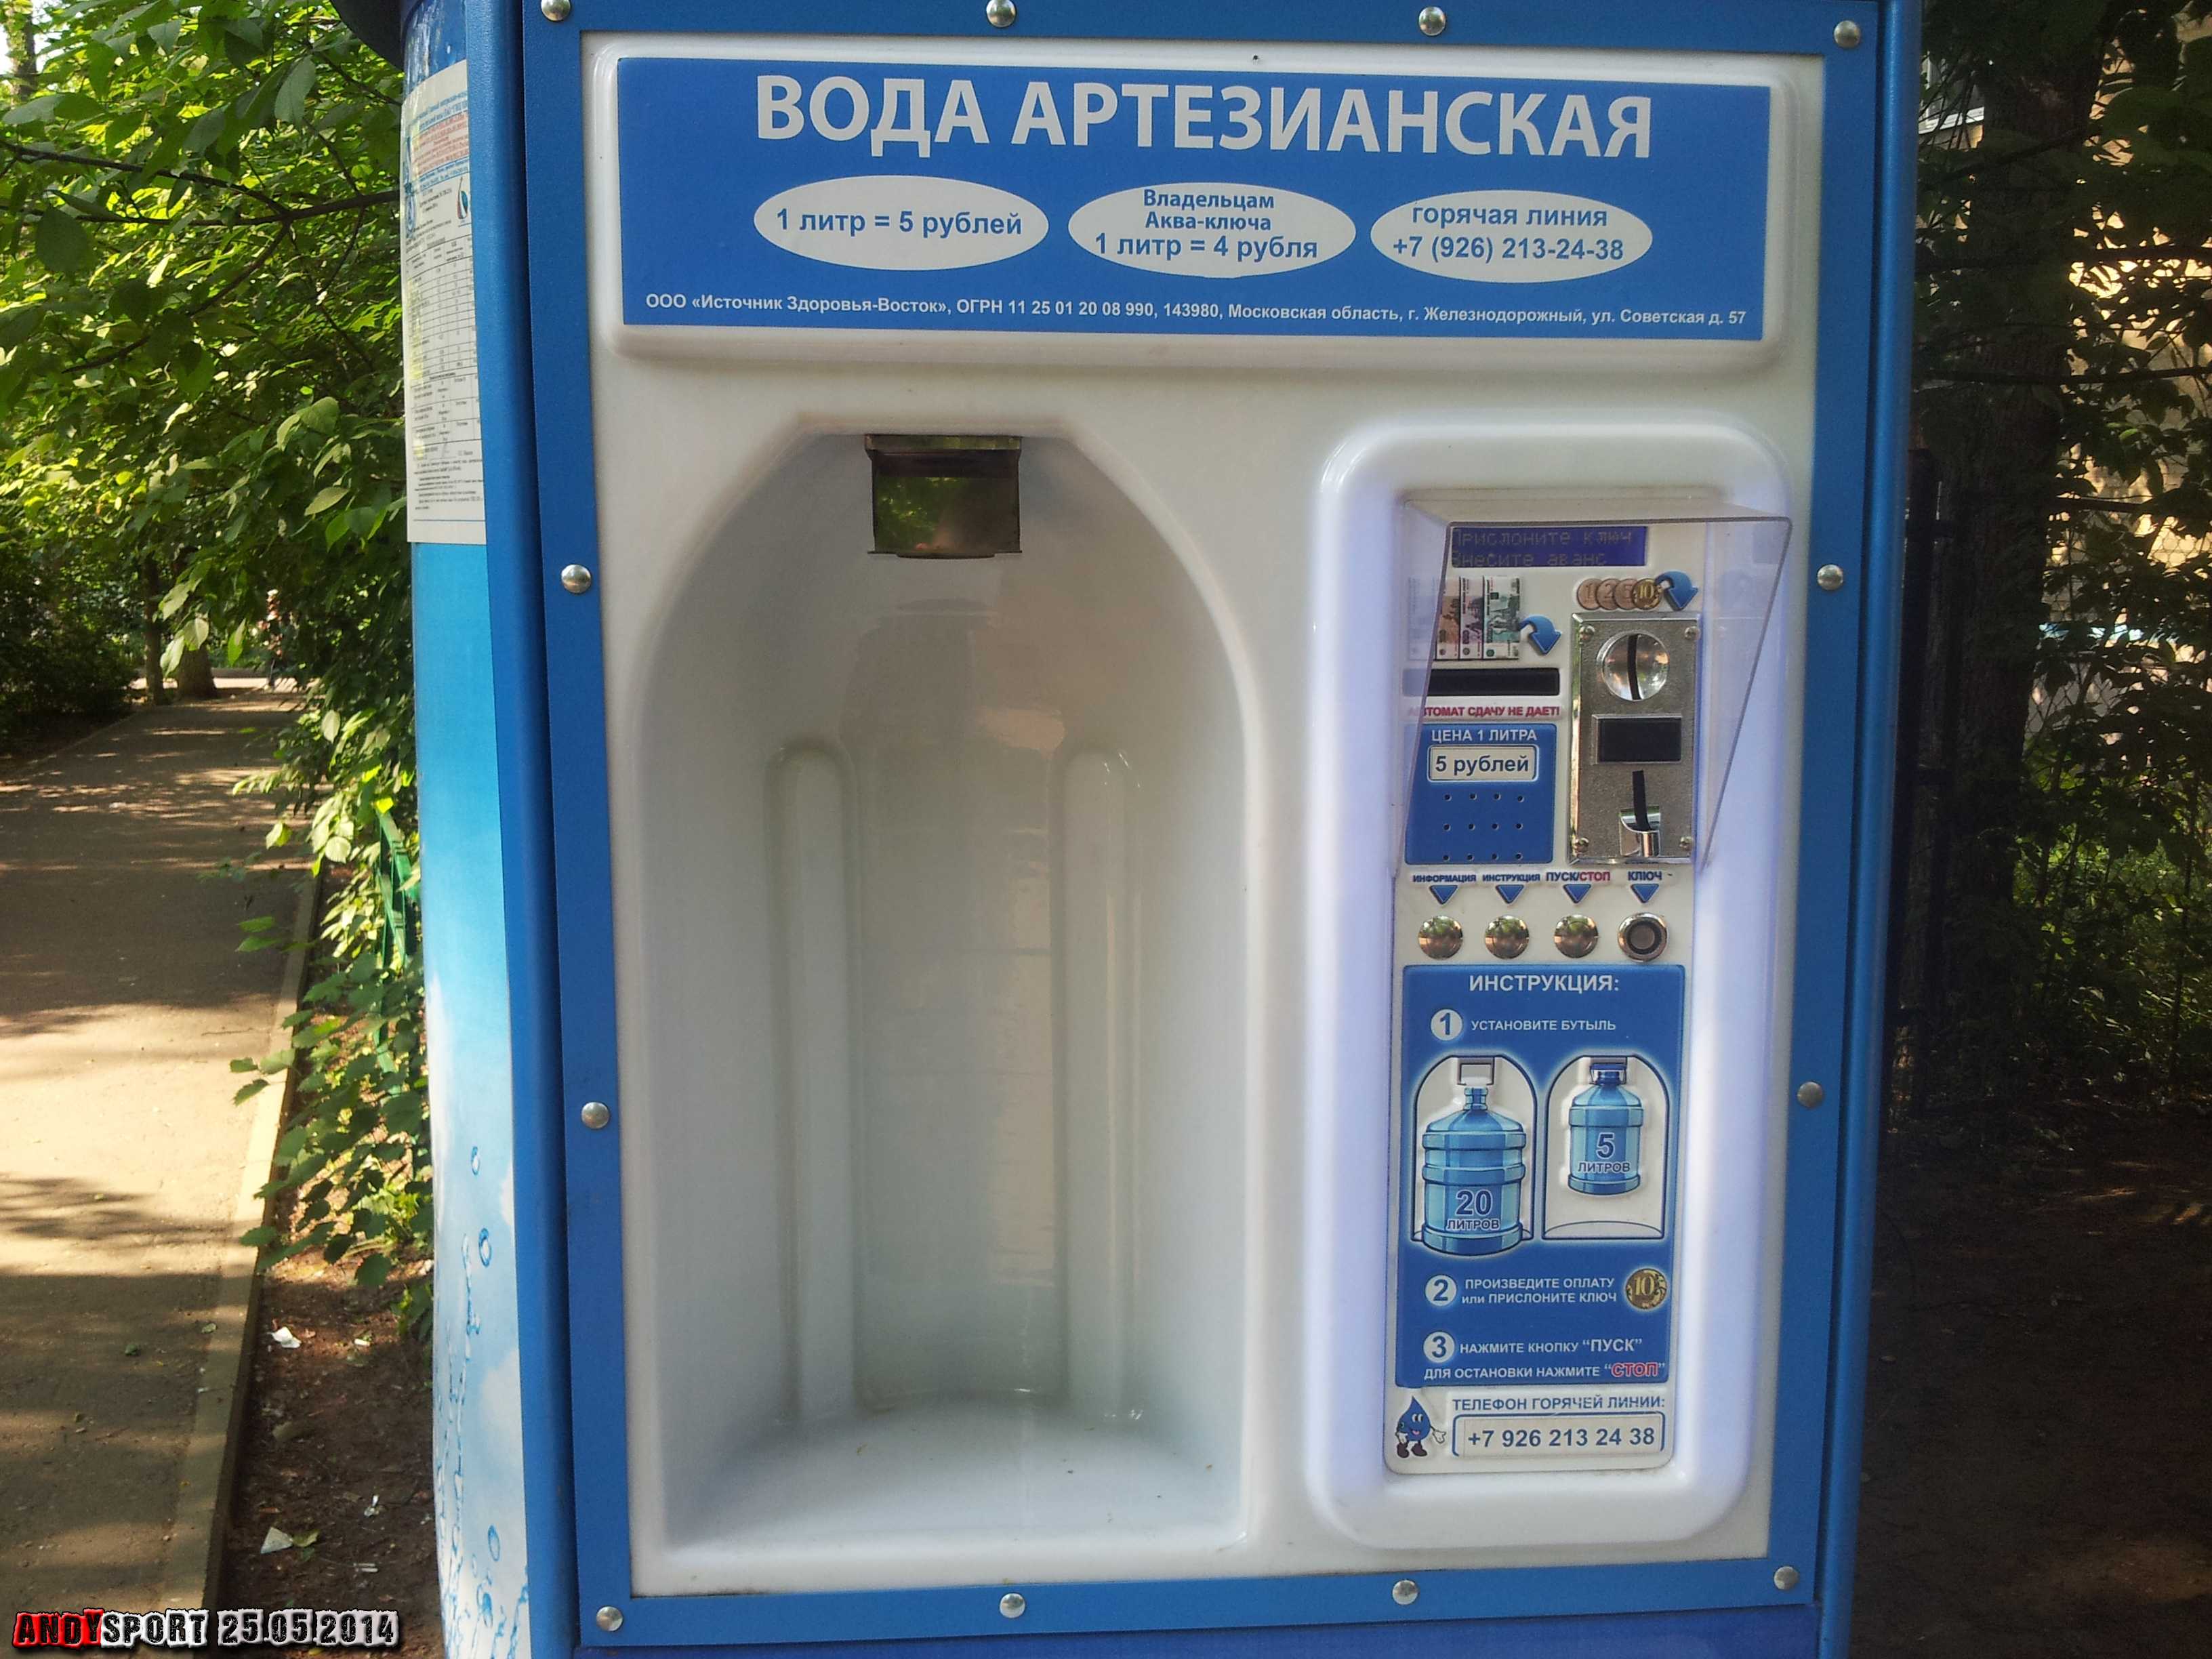 Продажа воды на улице в розлив. Автомат для ГАЗ воды Аквамарин АС-90. Уличный автомат с водой. Автомат розлива питьевой воды. Аппарат для питьевой воды на улице.